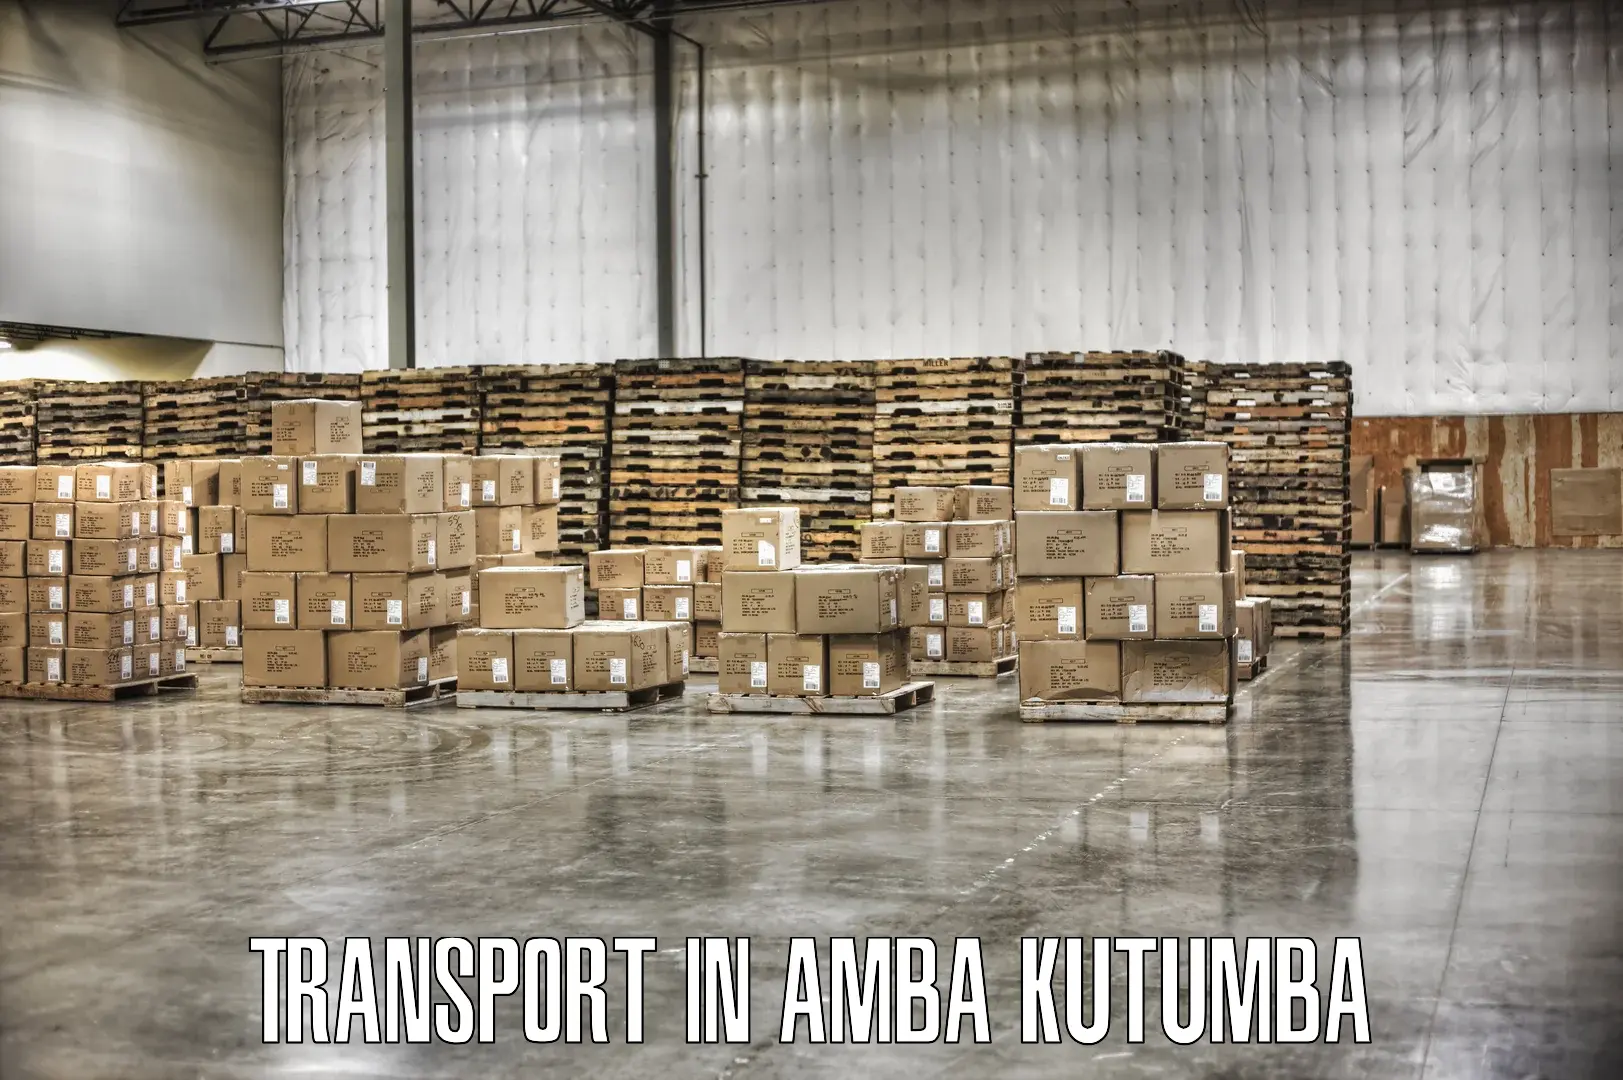 Cycle transportation service in Amba Kutumba